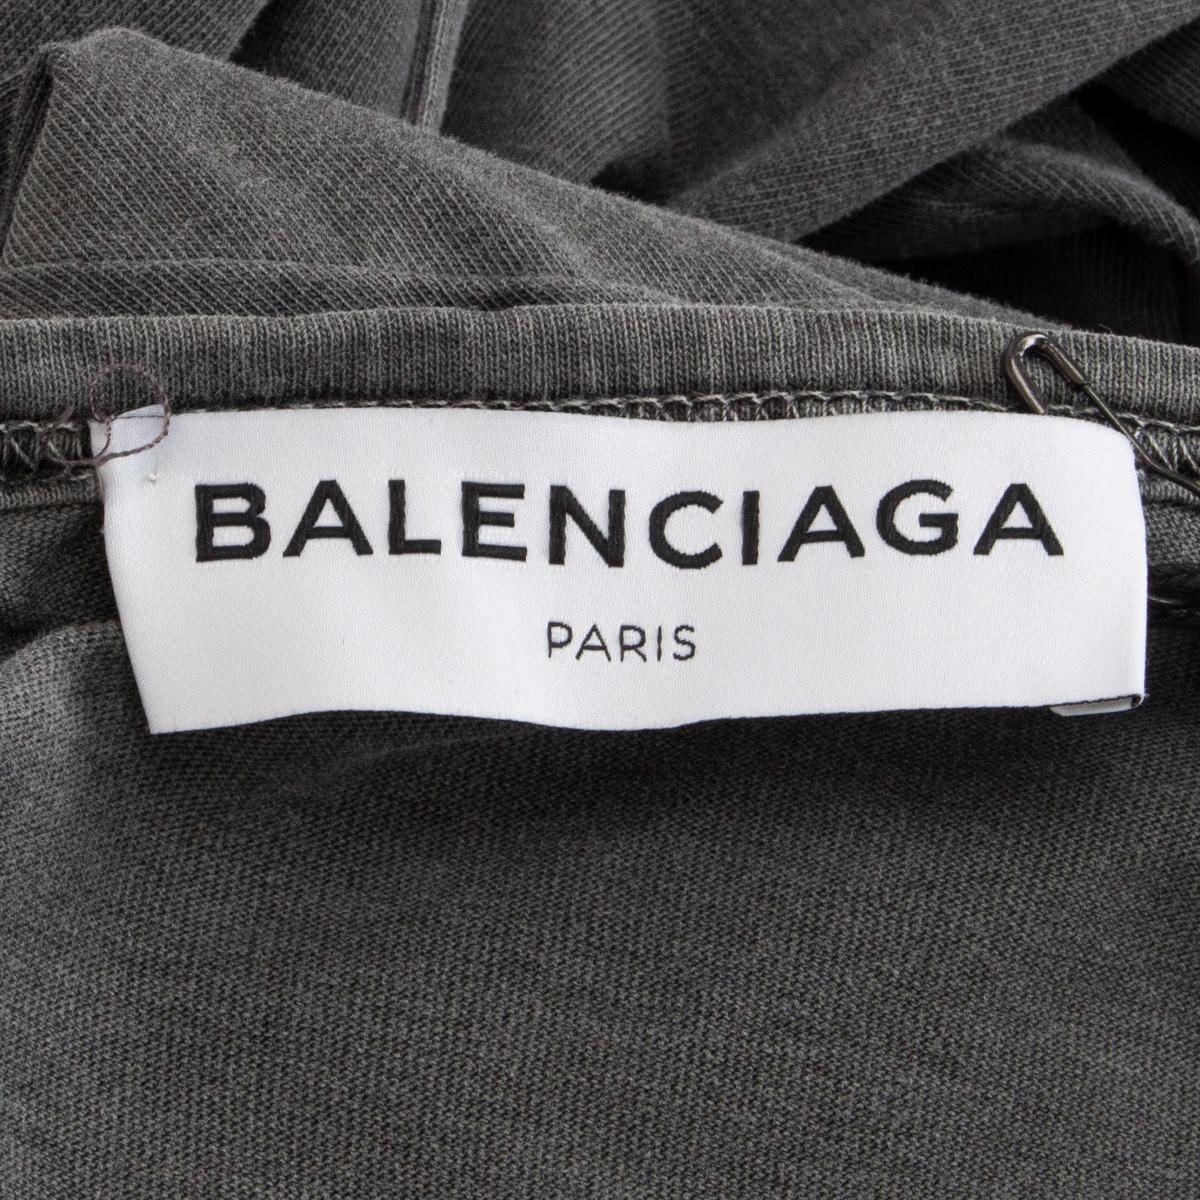 etichetta balenciaga originale